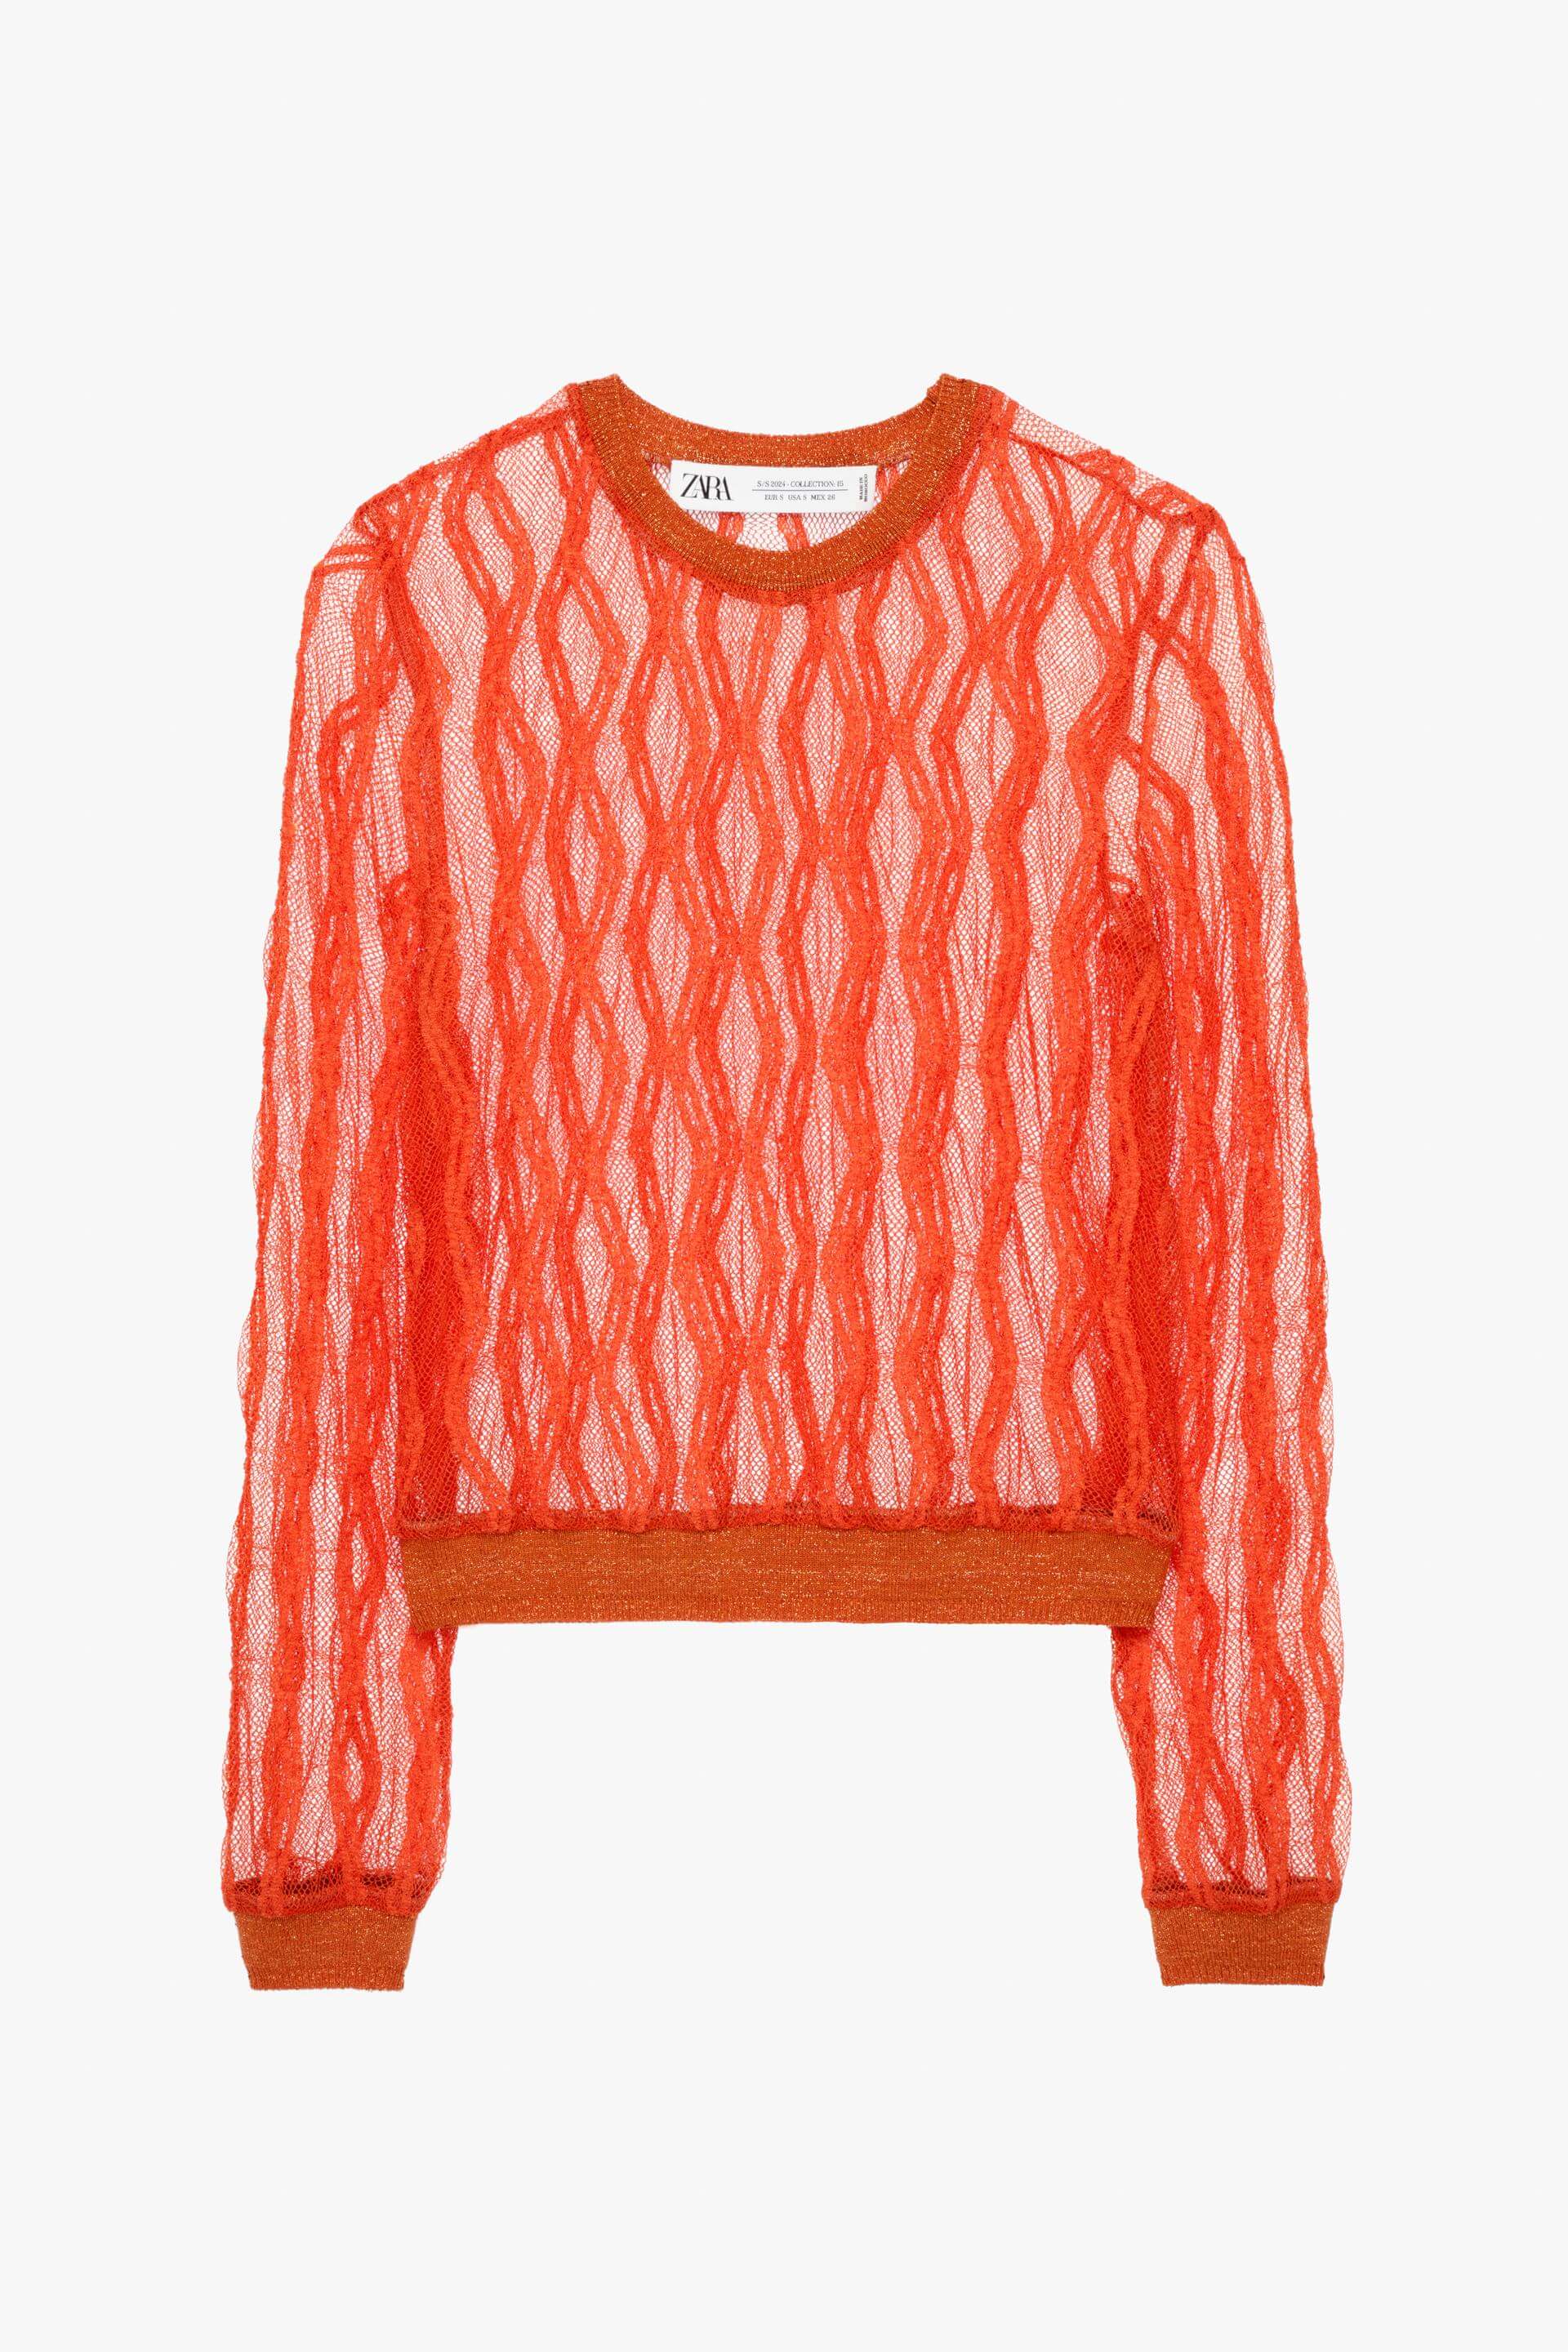 Топ Zara Knit - Limited Edition, оранжевый юбка zara knit limited edition оранжевый